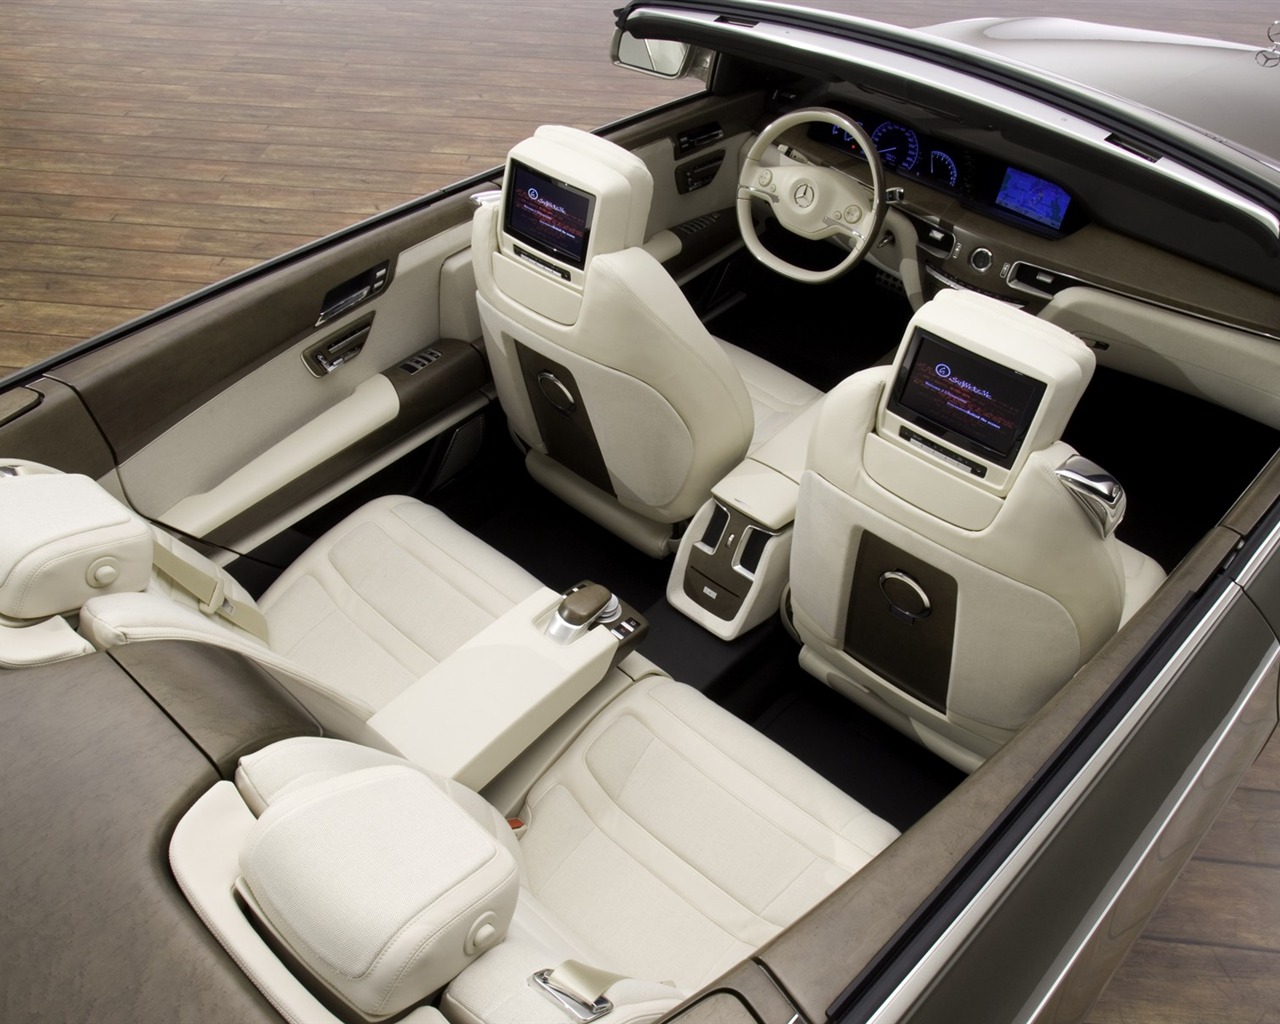 Mercedes-Benz fondos de escritorio de concept car (1) #8 - 1280x1024